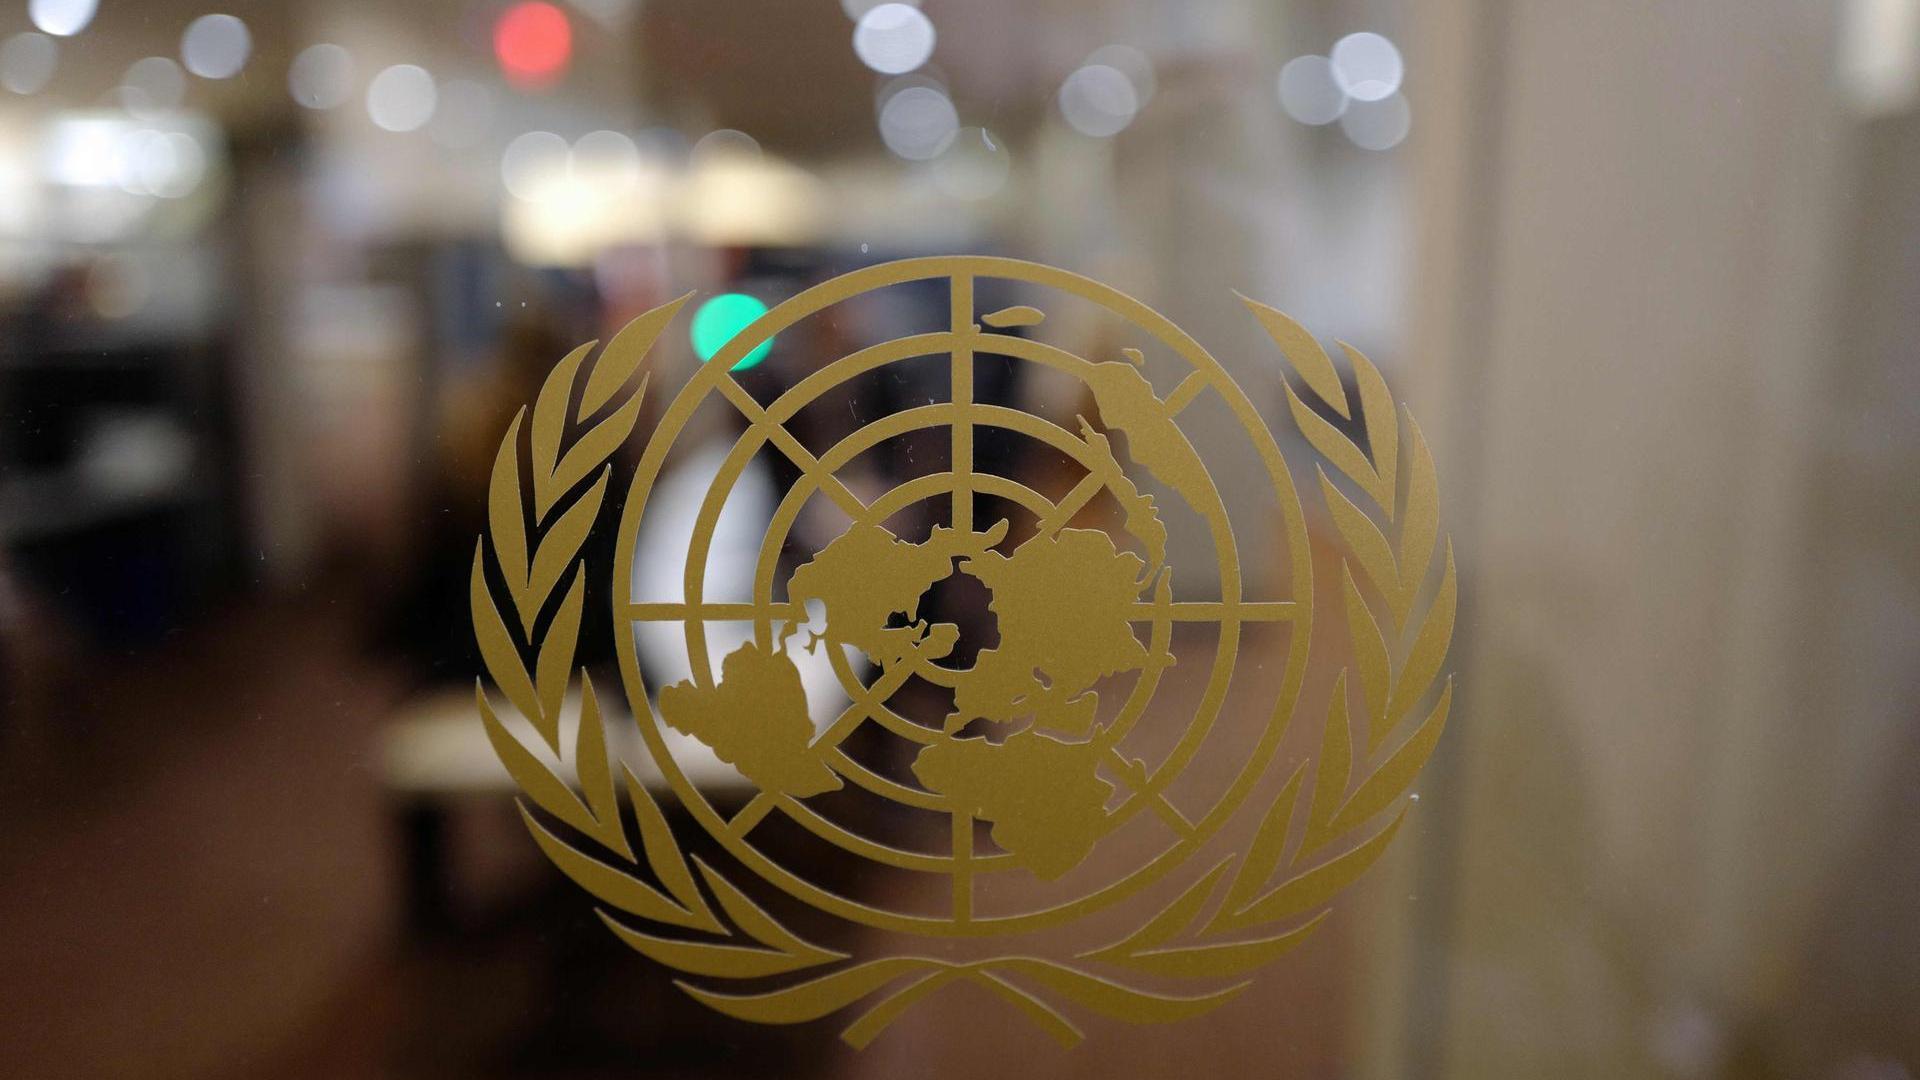 Jusqu'en 2025, le Luxembourg siégera au sein du Conseil des droits de l'homme de l'ONU, organisation qui se réunit trois fois par an à Genève.